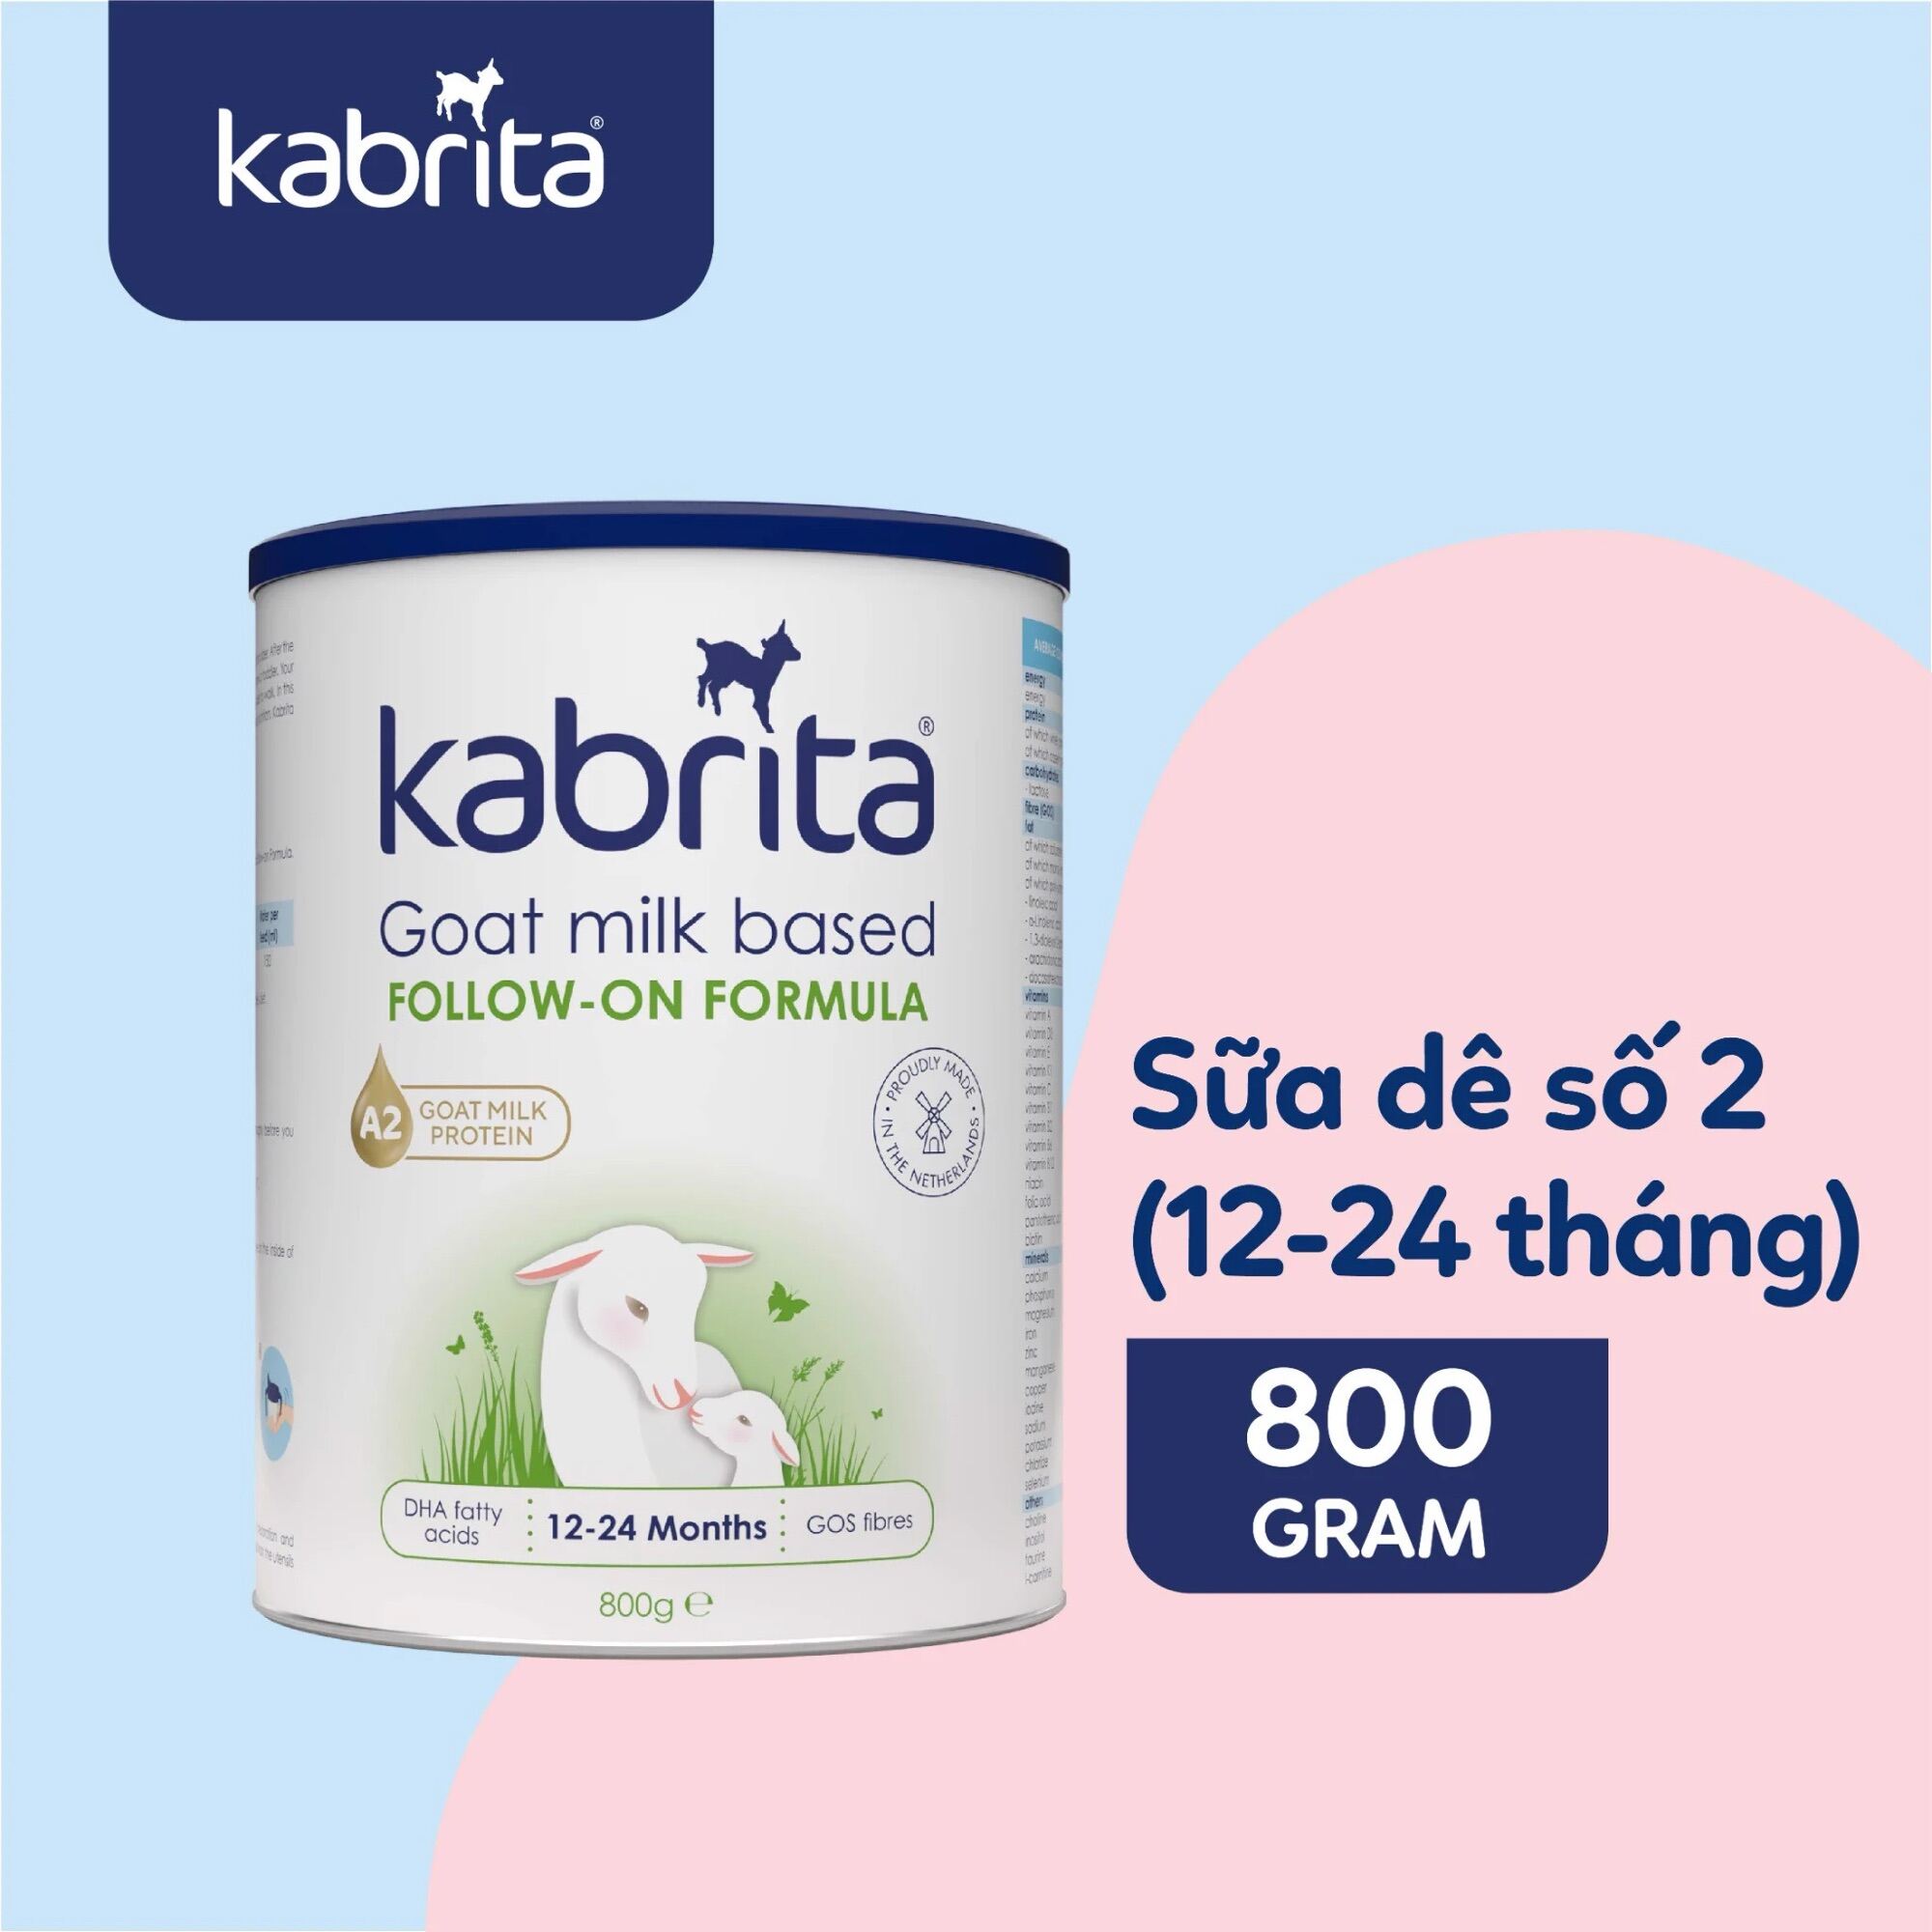 Sữa dê Kabrita số 2, Lon 800g, cho bé từ 12-24 tháng